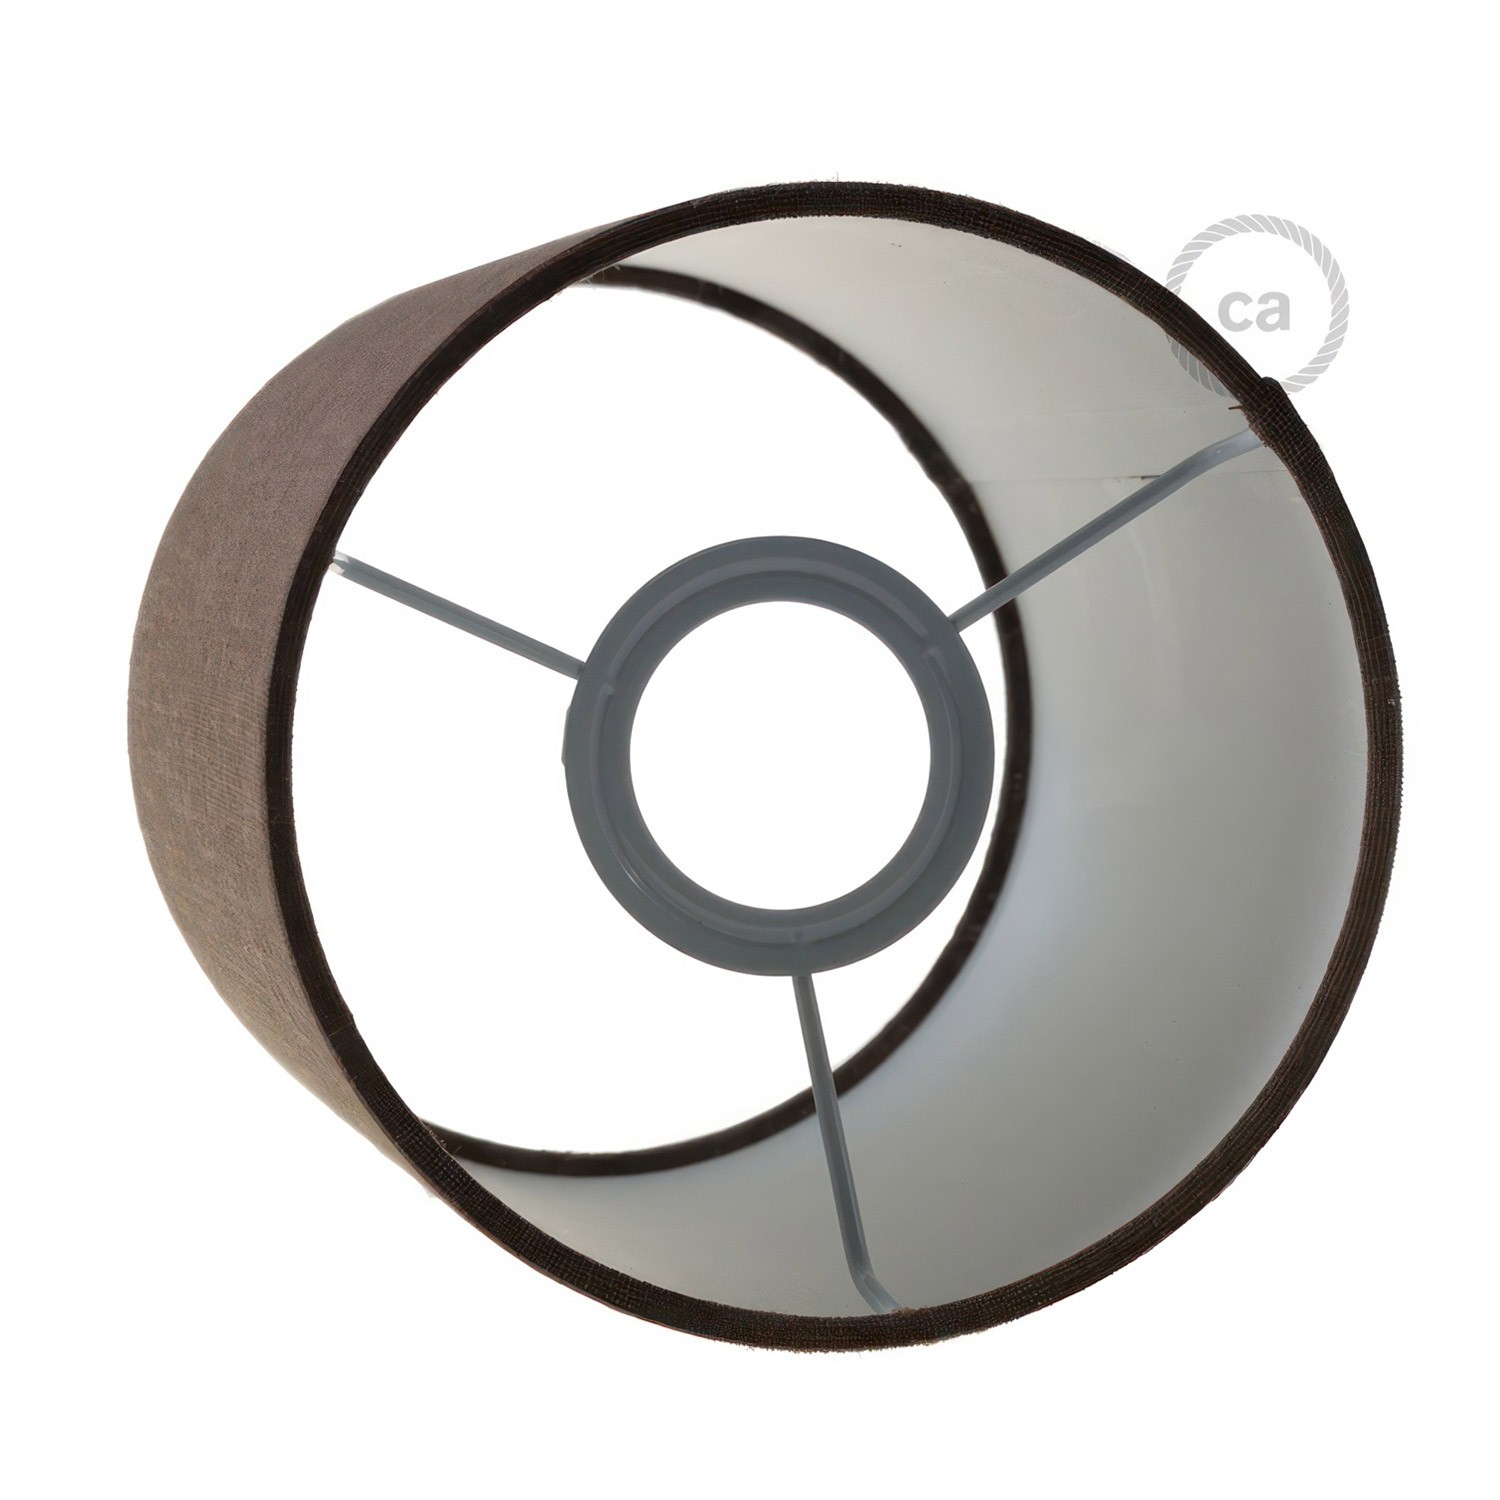 Fermaluce Metal med Cylinder Lampeskærm, Ø 15cm h18cm, metal finish væg- eller loftslampe